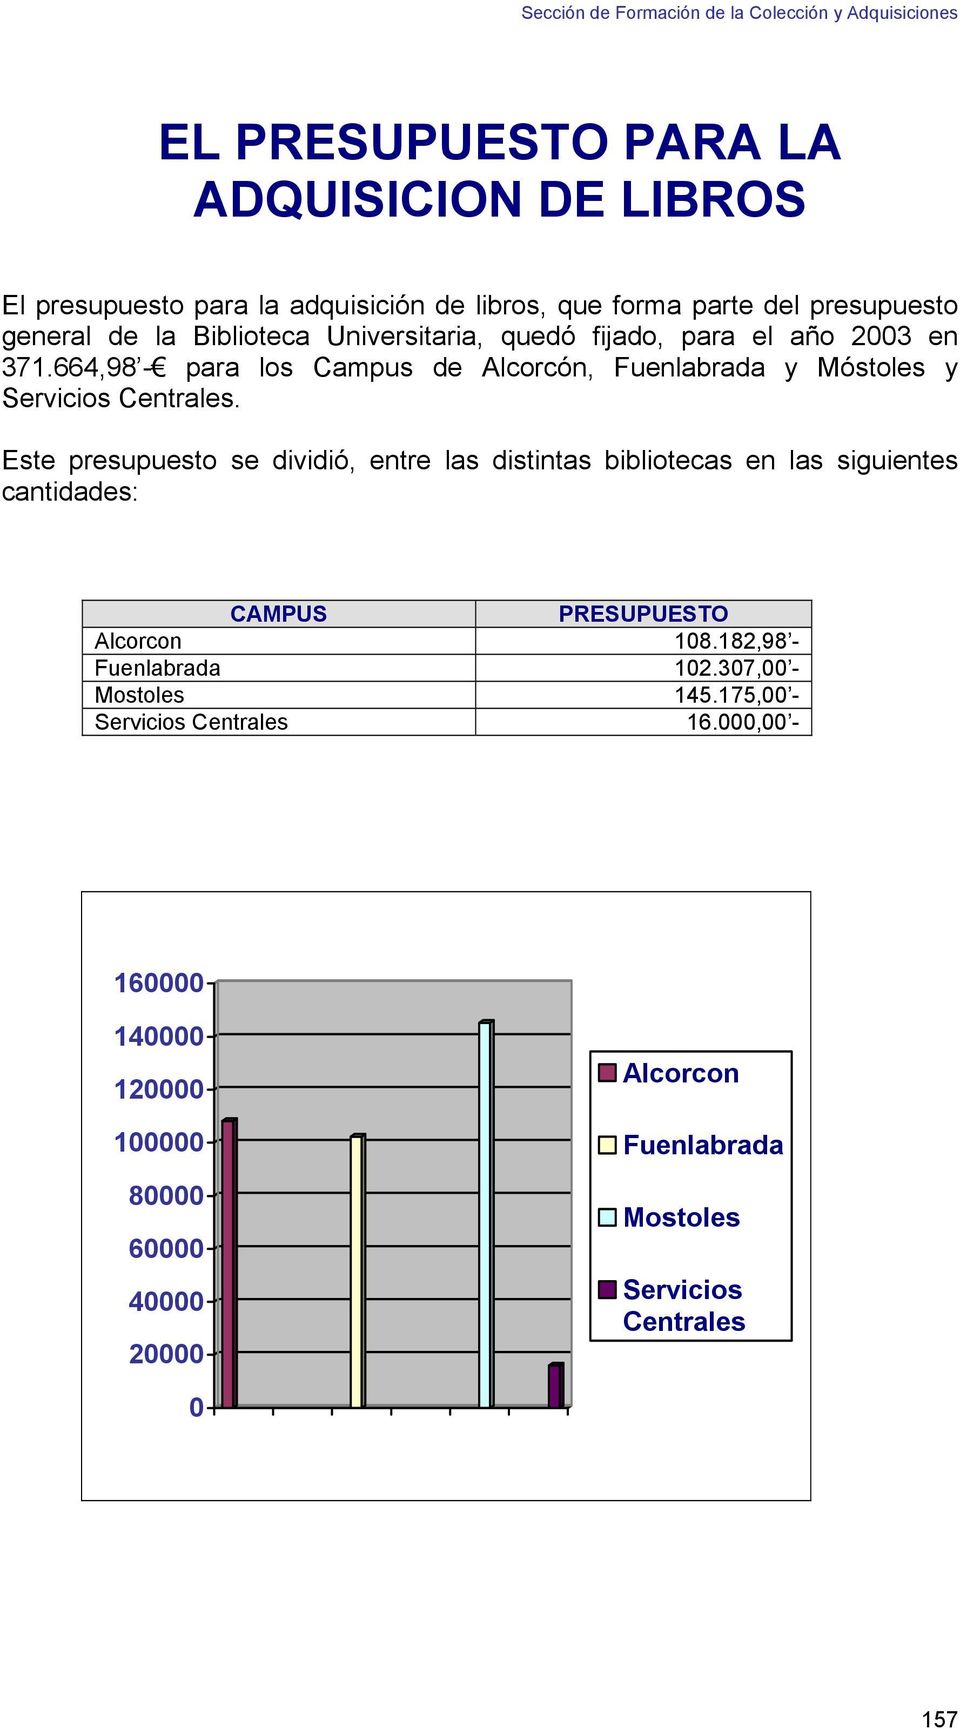 Este presupuesto se dividió, entre las distintas bibliotecas en las siguientes cantidades: CAMPUS PRESUPUESTO Alcorcon 108.182,98 - Fuenlabrada 102.